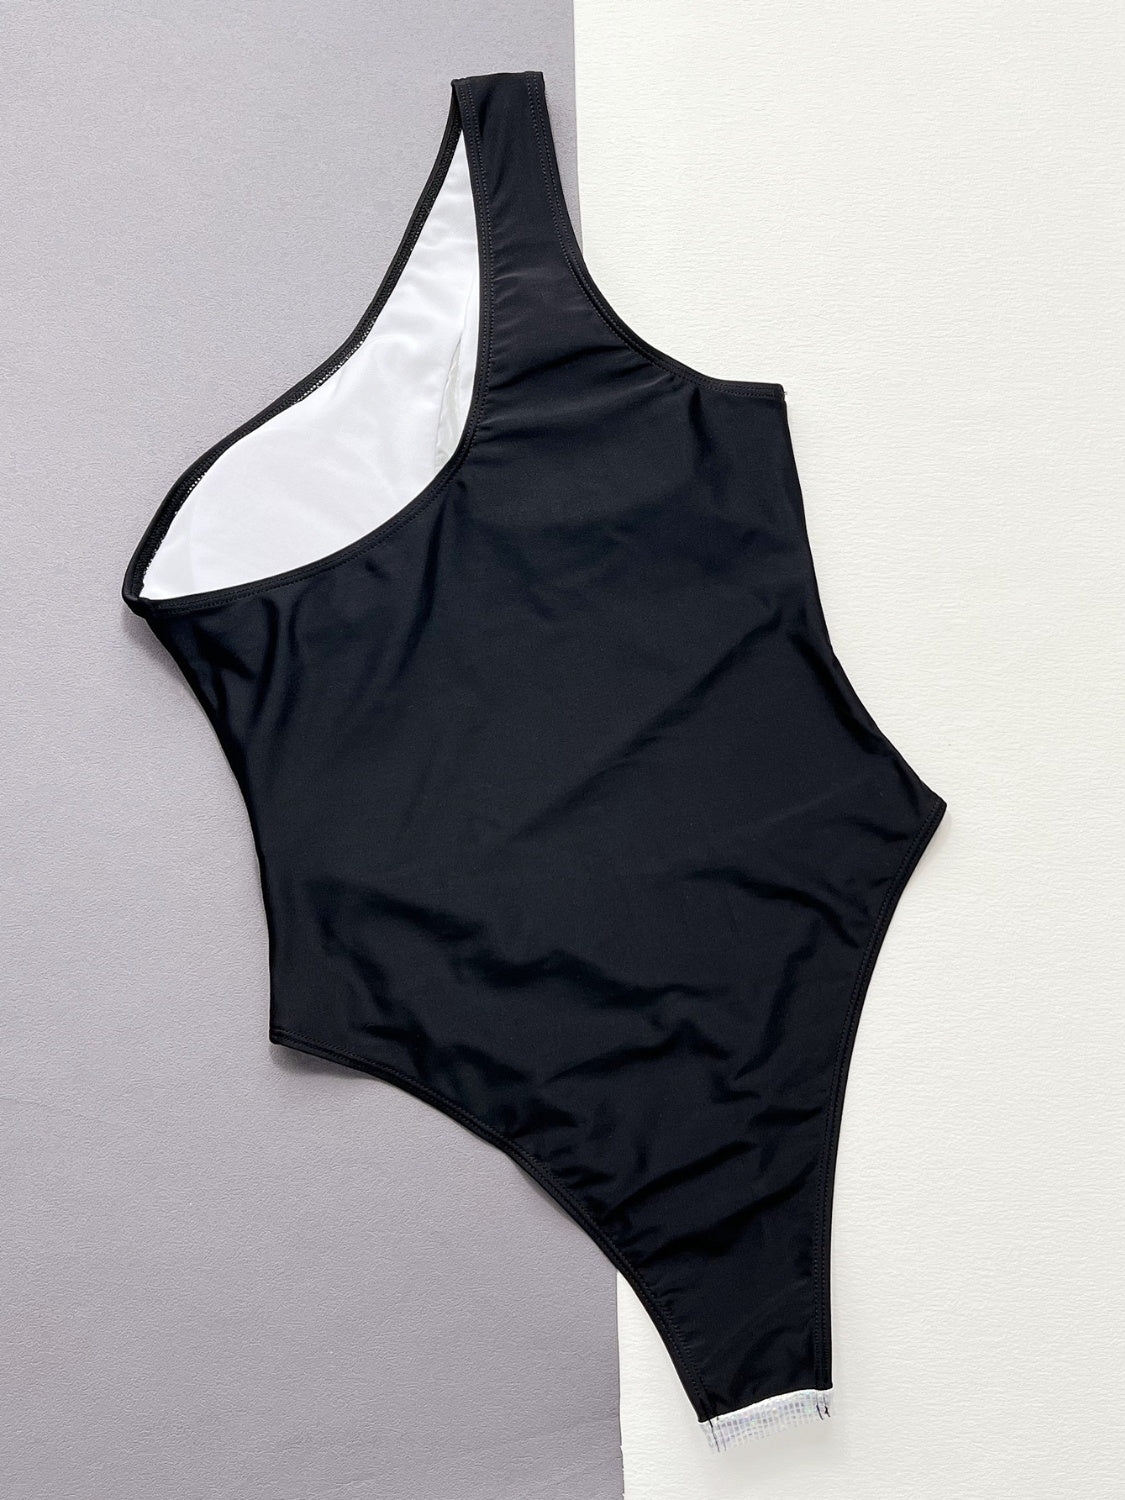 Contrast Panel One-Piece Swimsuit | Sugarz Chique Boutique